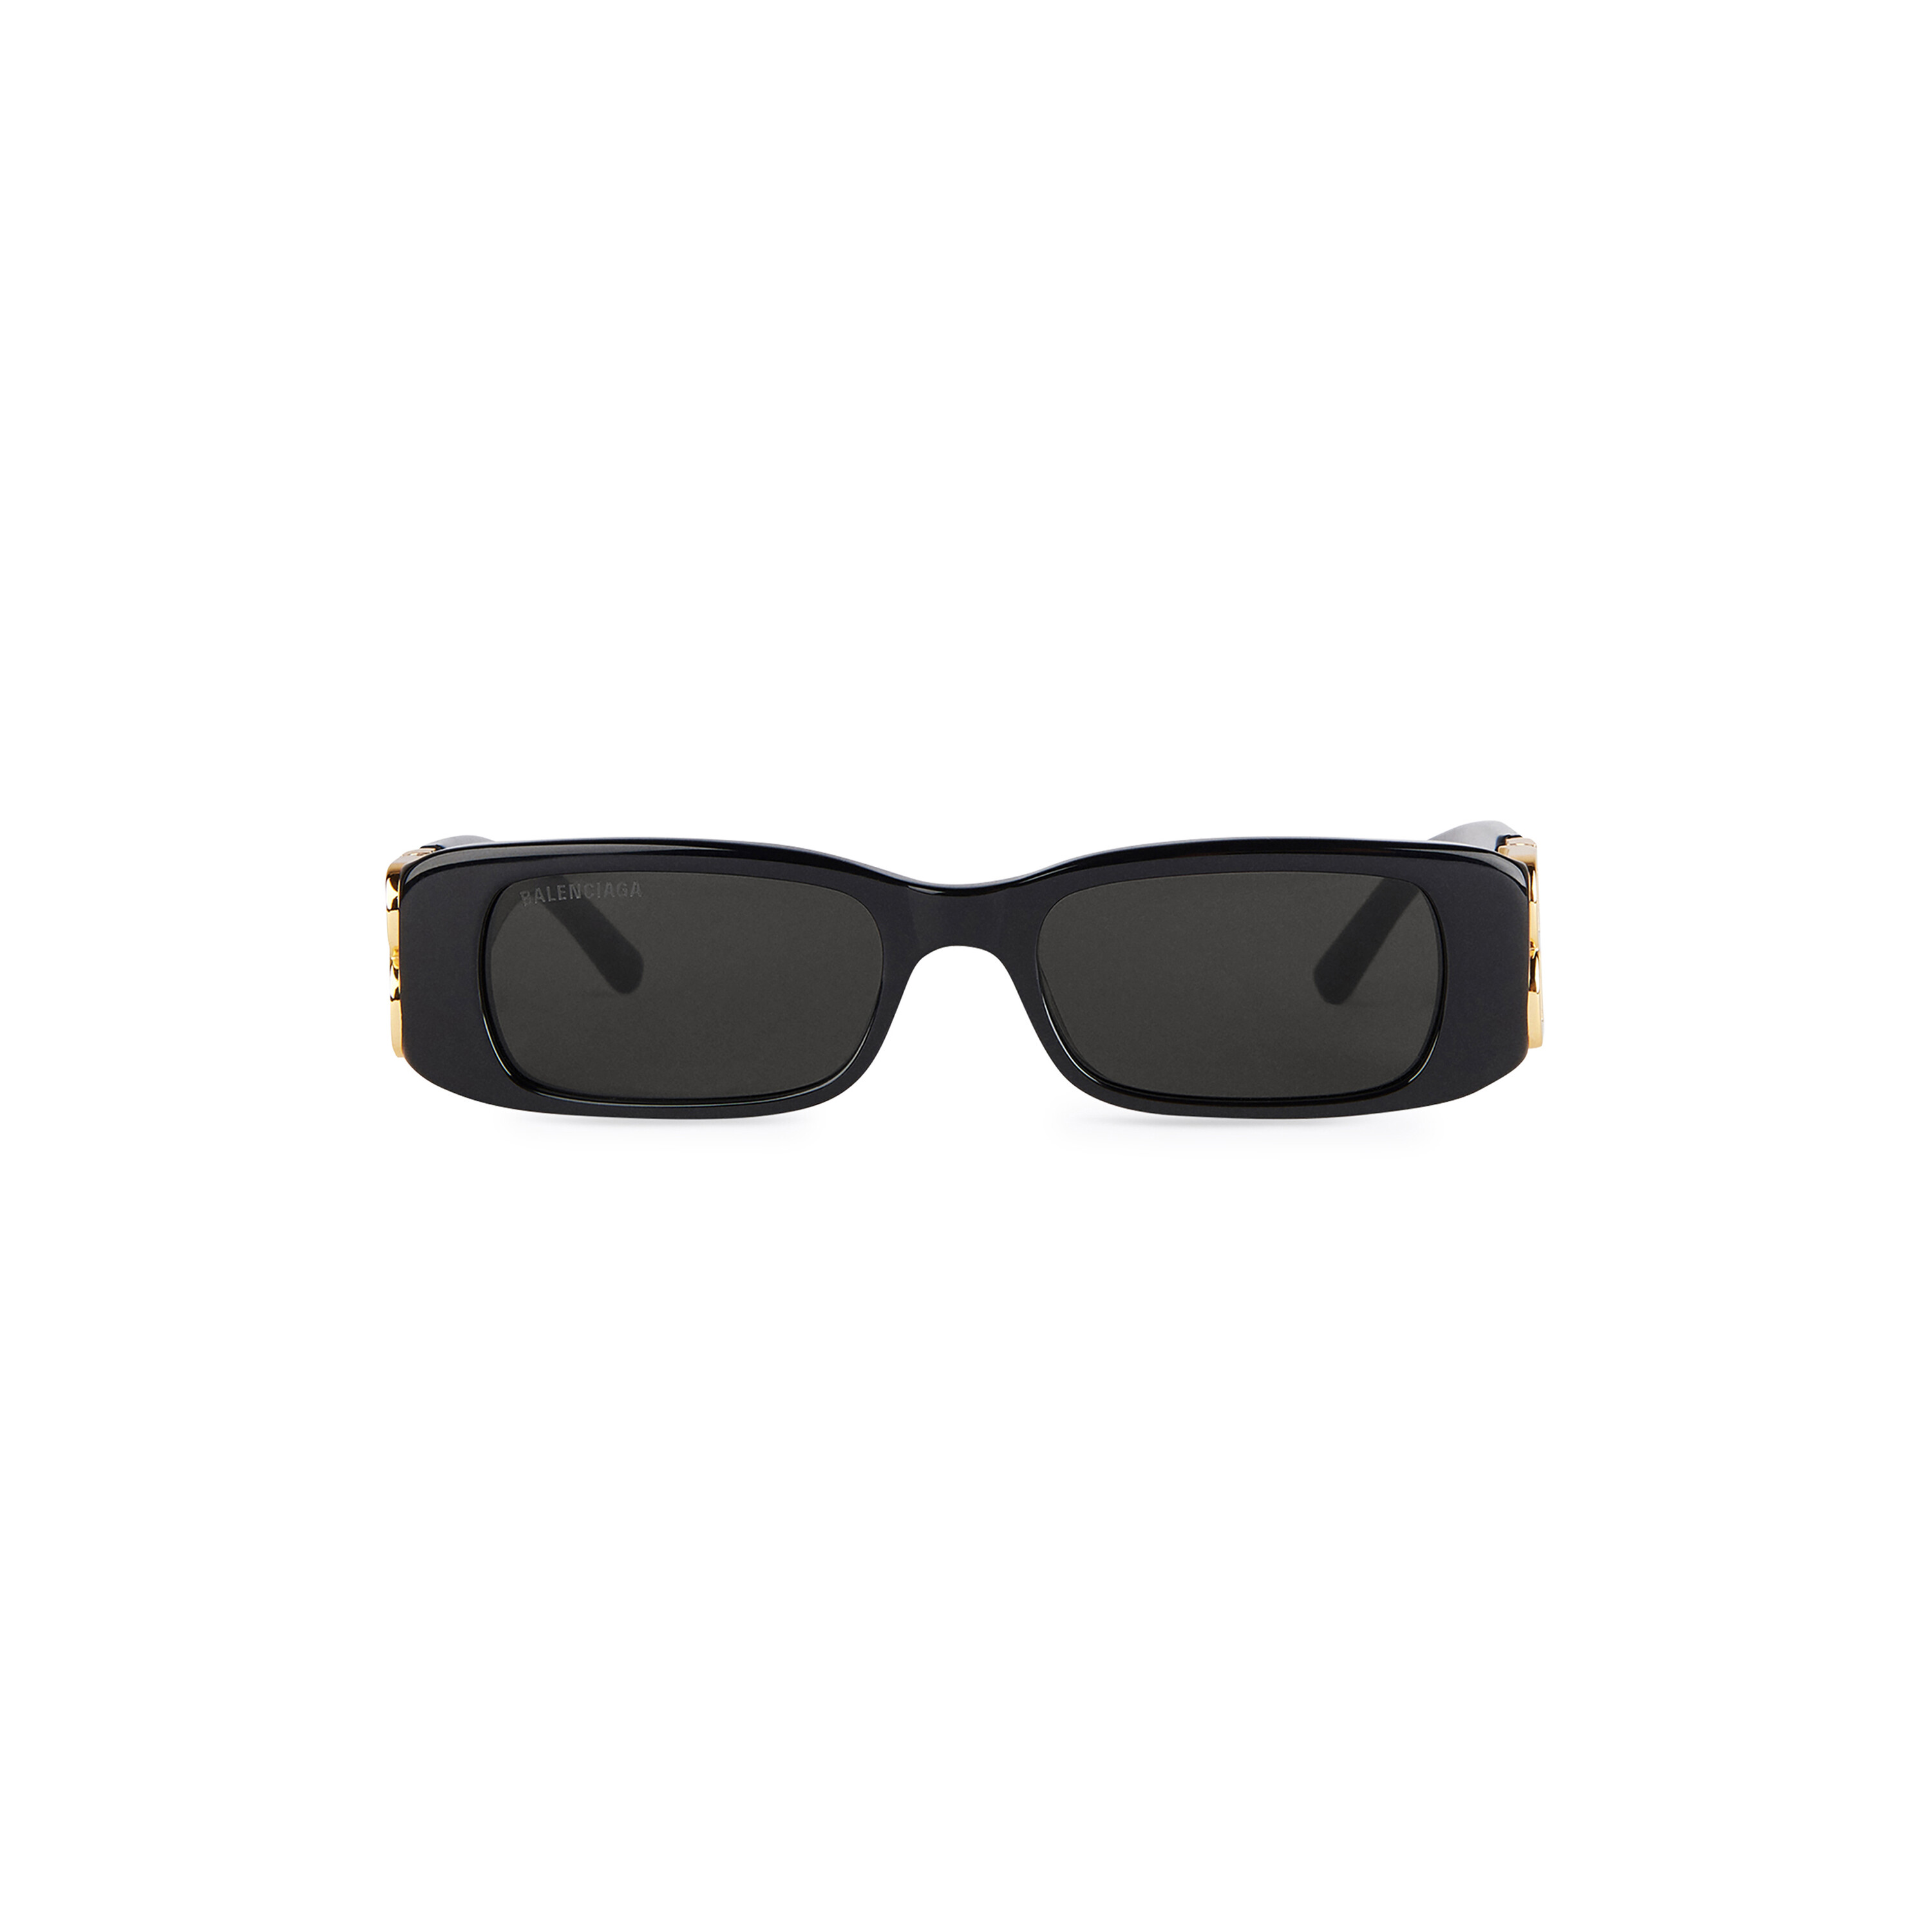 Mua Balenciaga sunglasses hàng hiệu chính hãng từ Mỹ giá tốt Tháng 62023   Fadovn